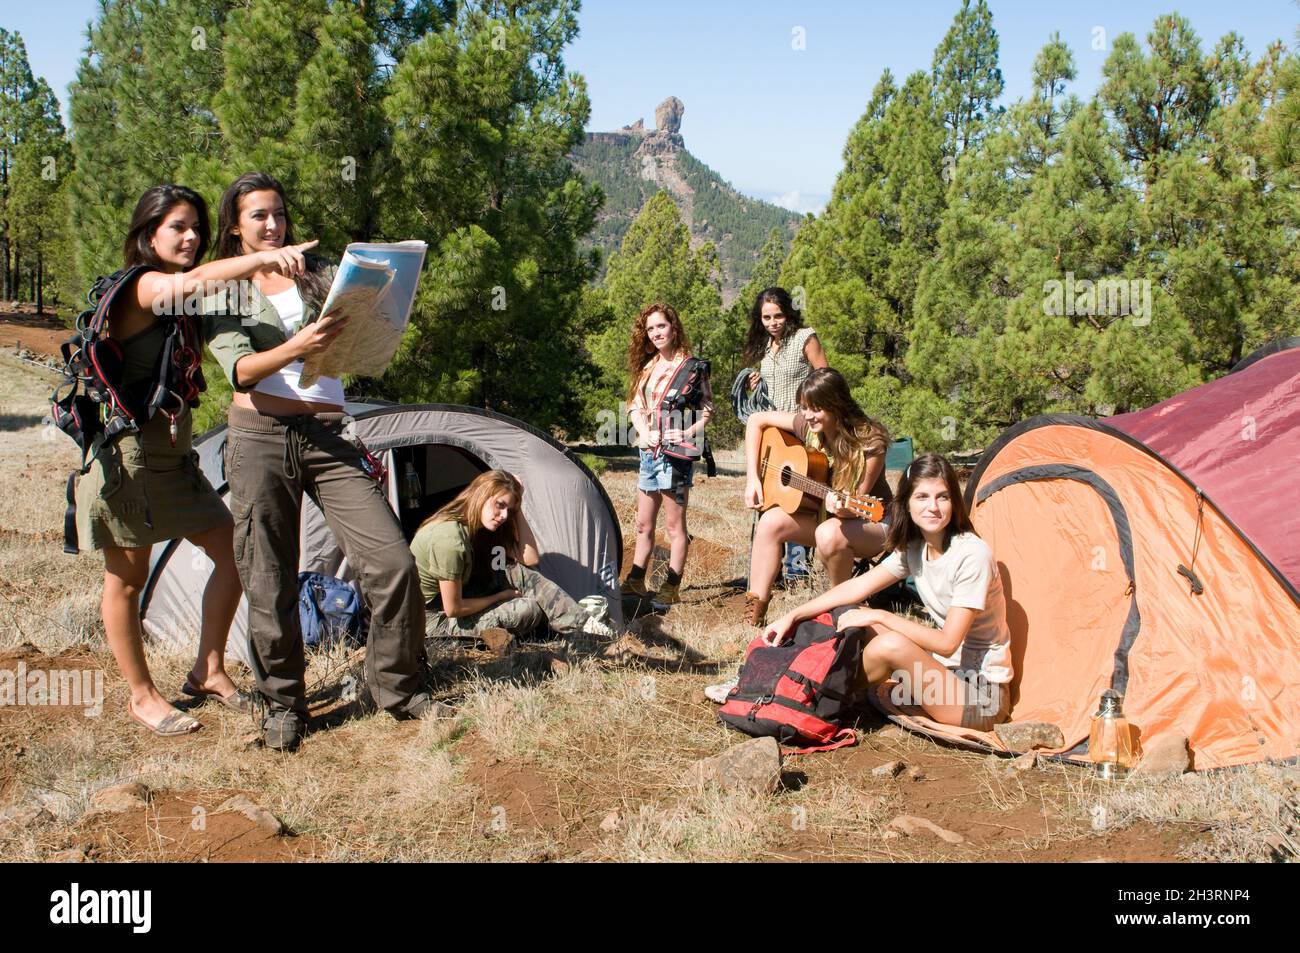 groupe d'amis qui s'amusent lors d'un voyage en camping Banque D'Images